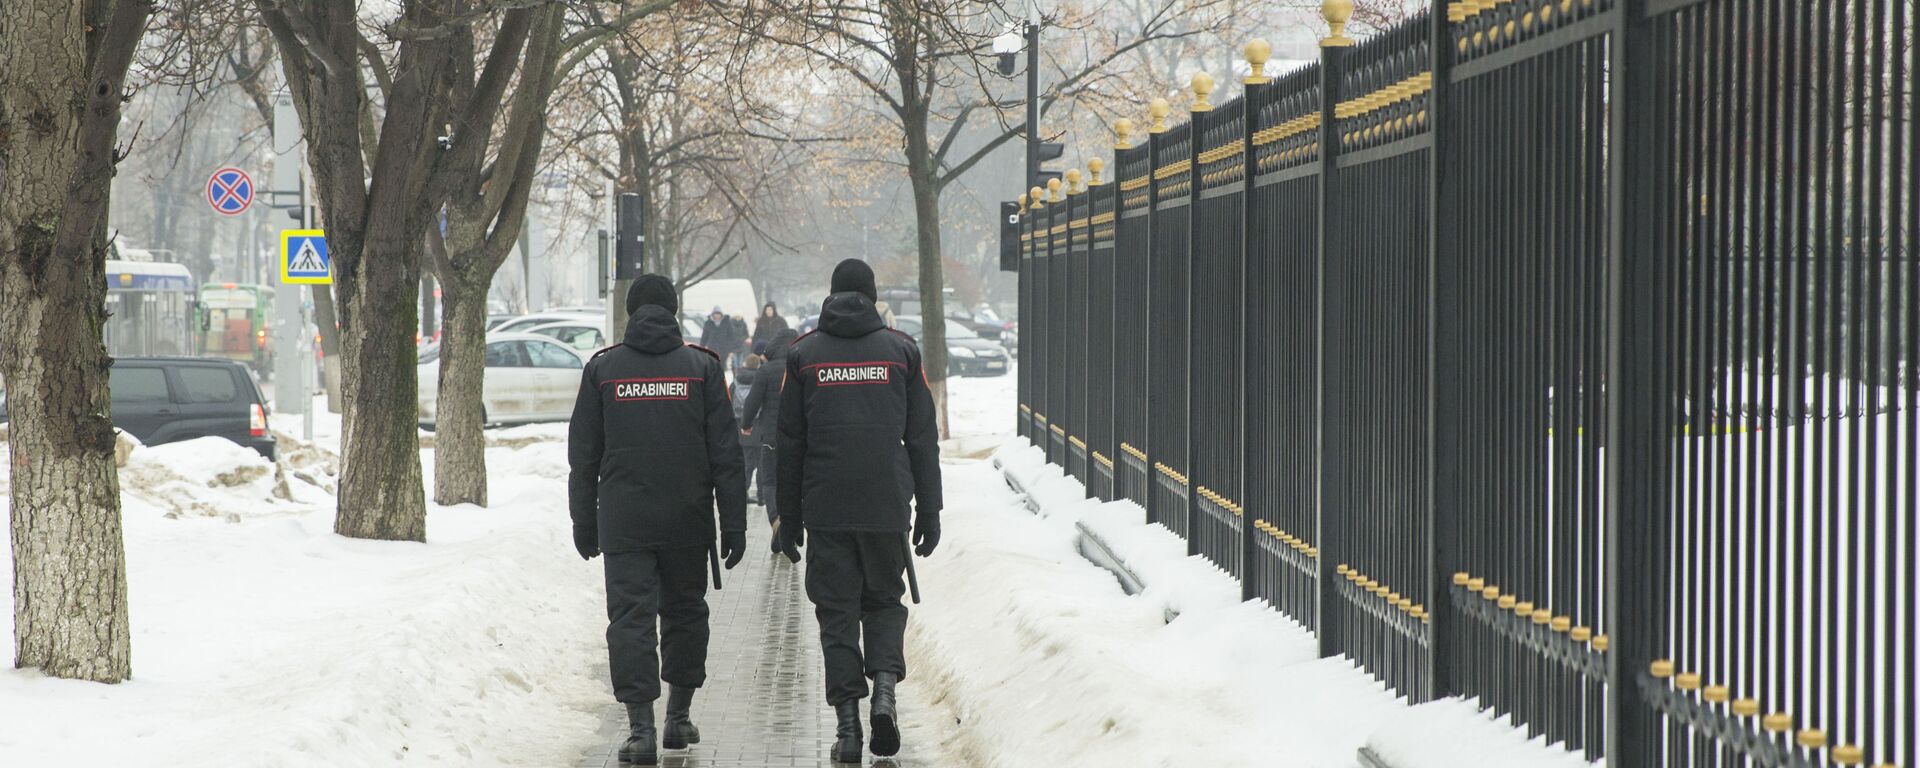 Карабинеры патрулируют улицы Кишинева во время пандемии - Sputnik Молдова, 1920, 20.01.2022